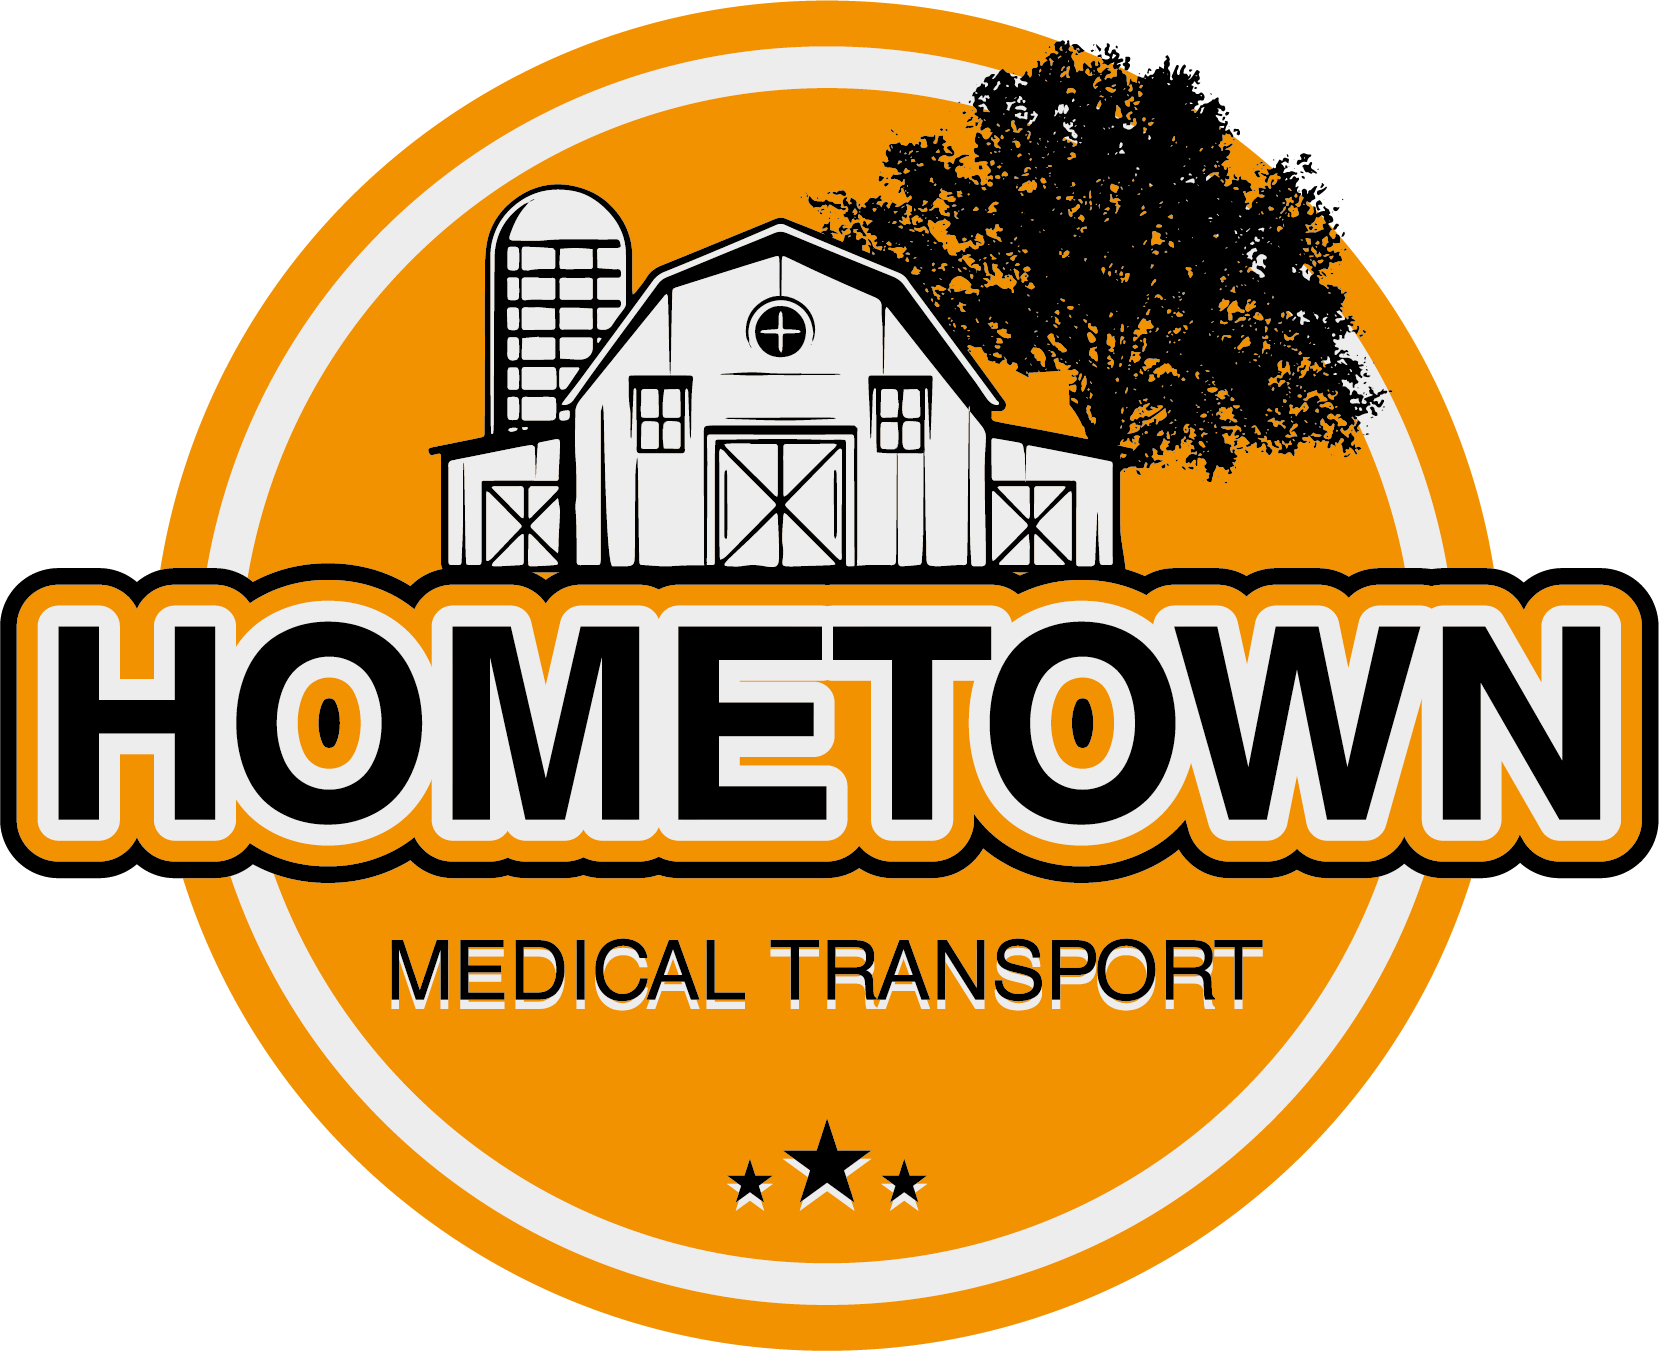 HometownMedTrans.com